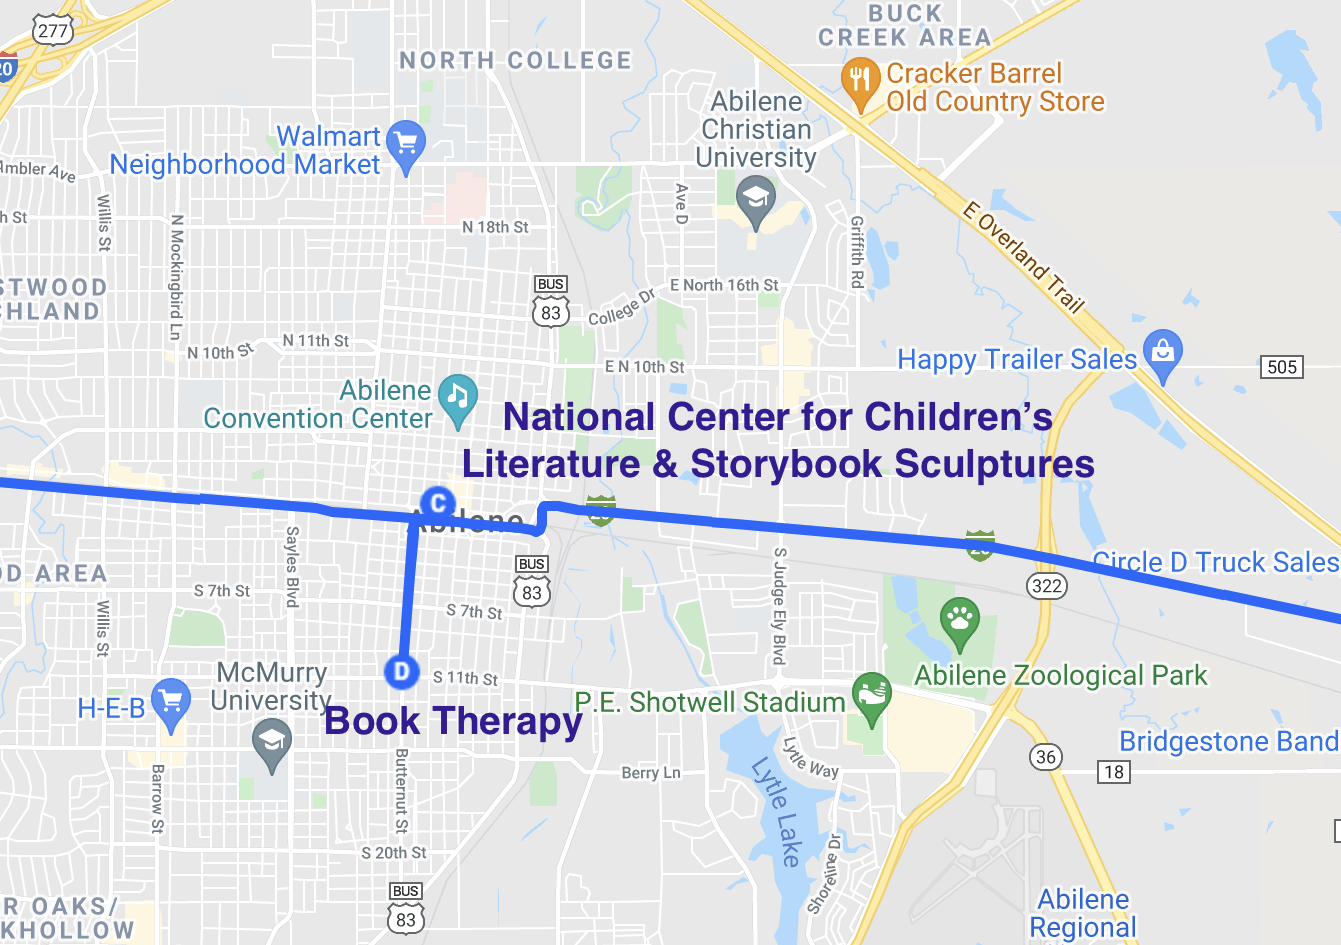 map of literary spots in abilene texas